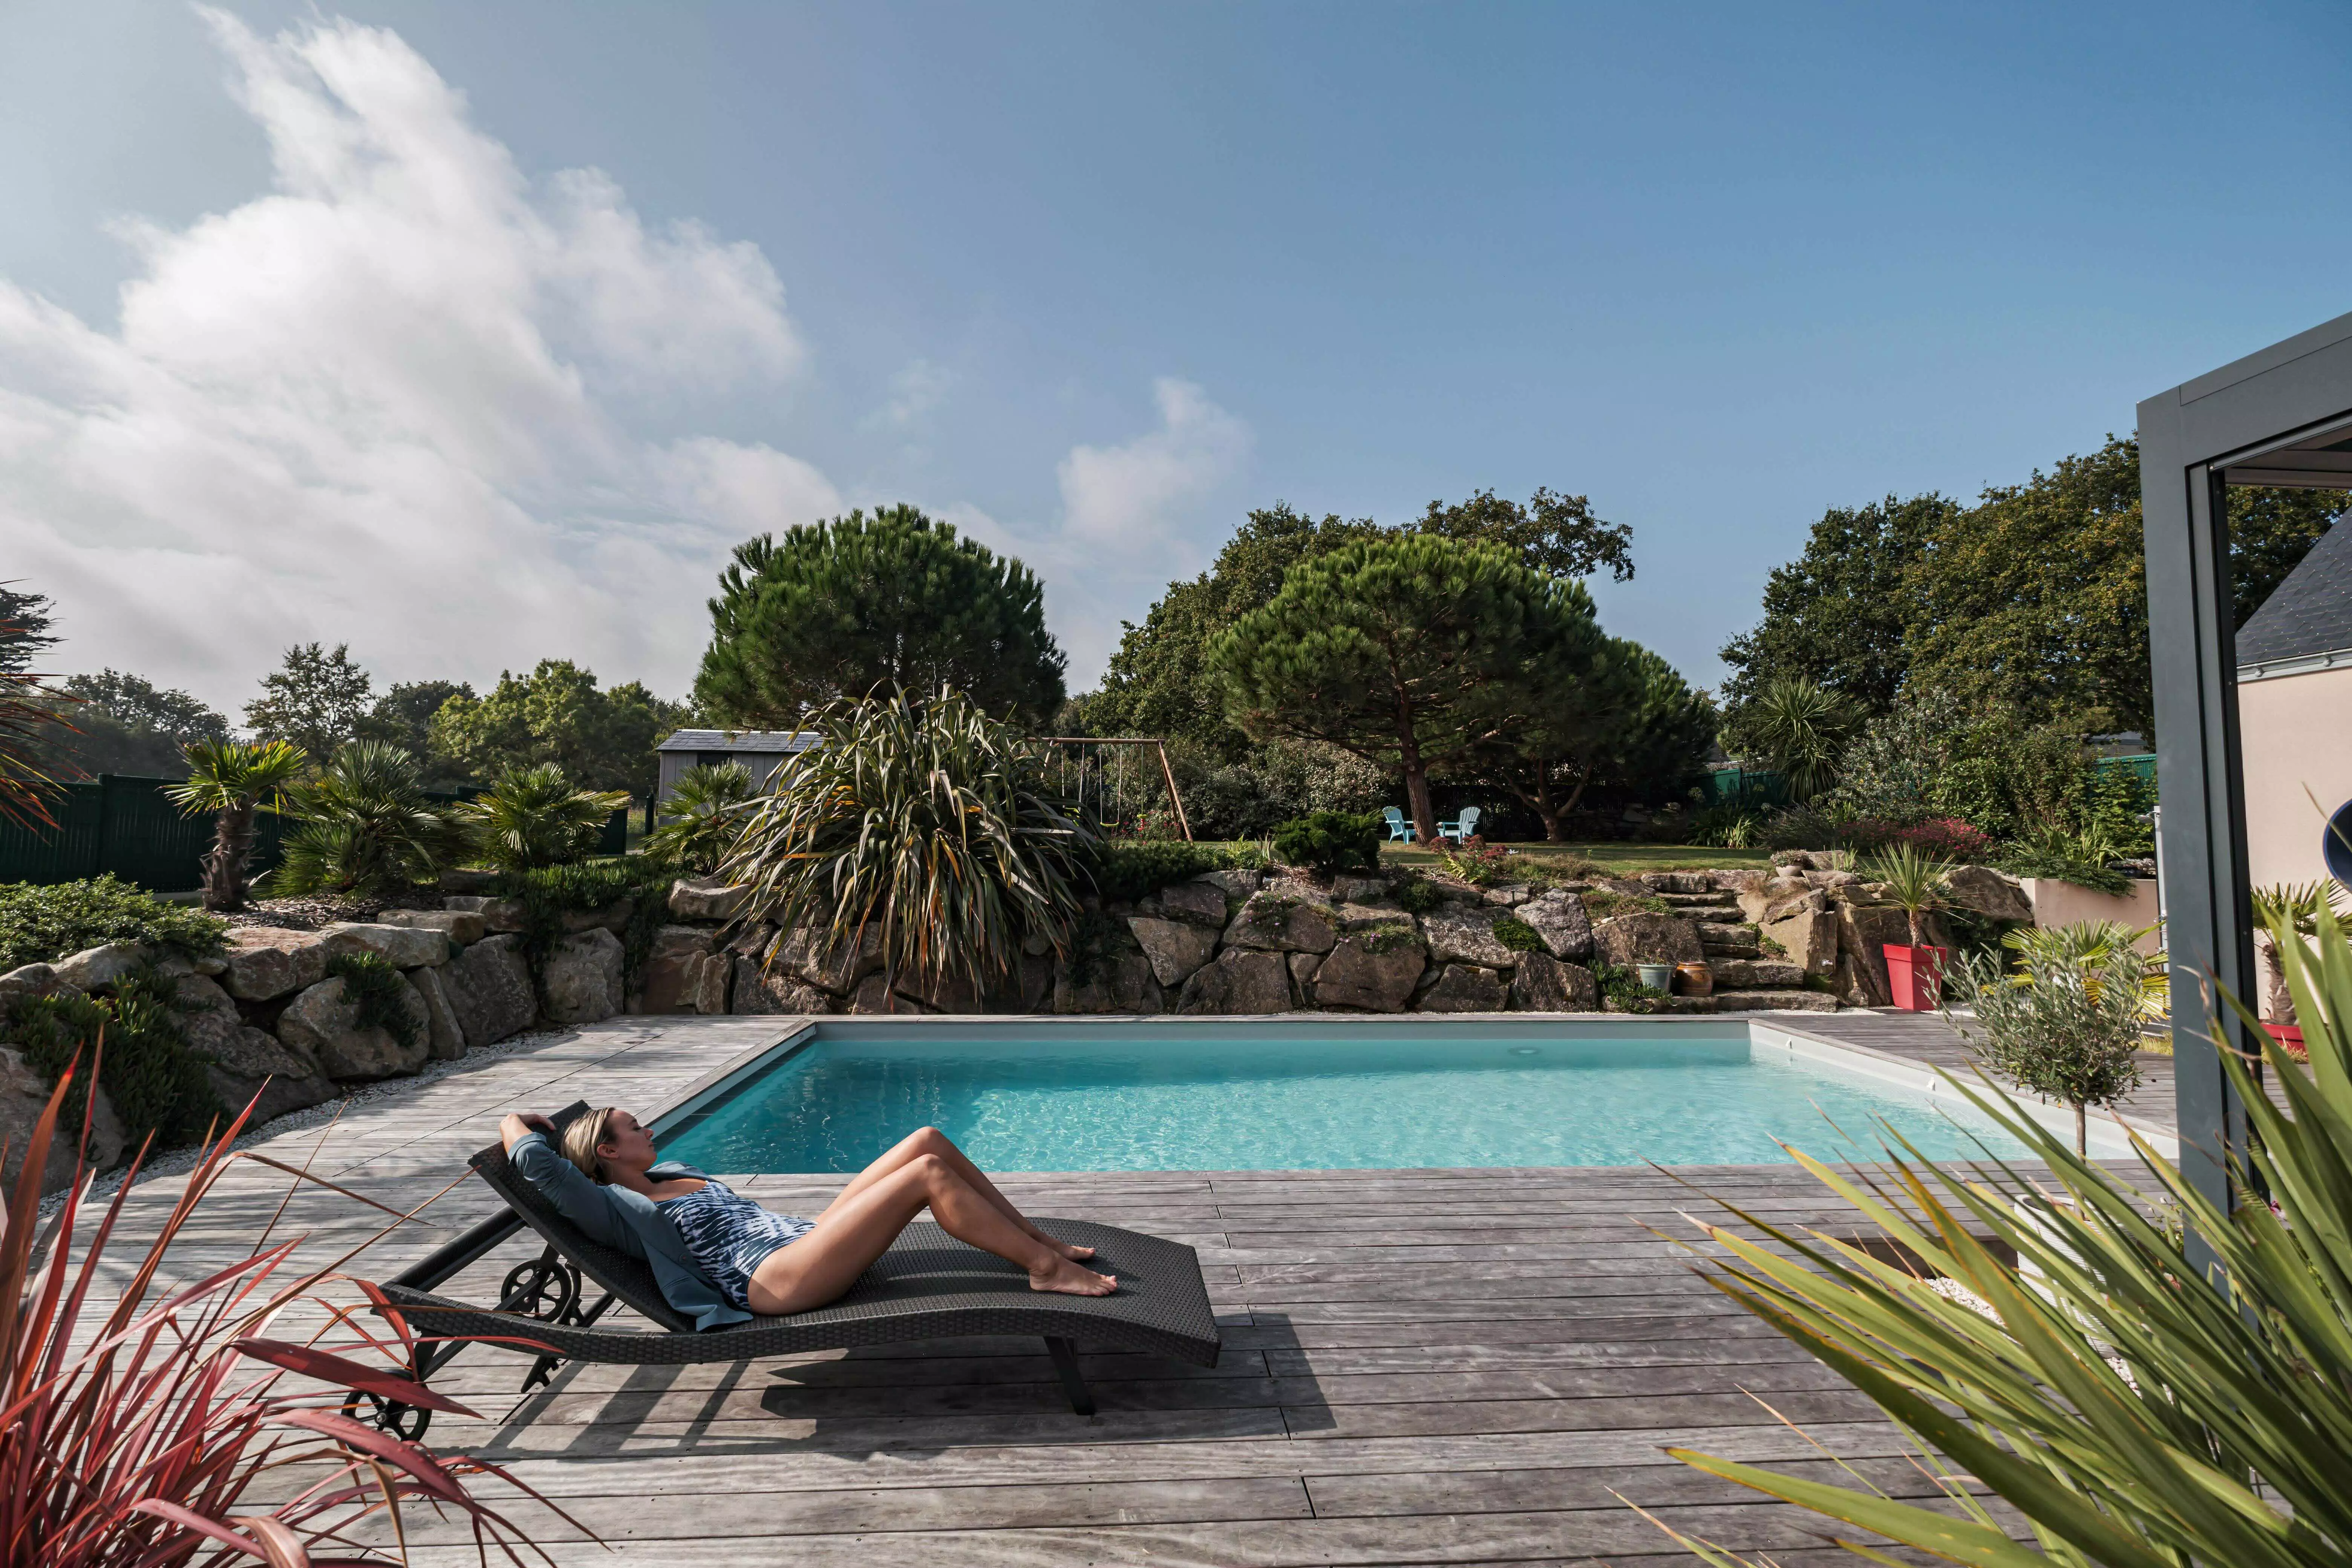 piscine, terrasse bois, avec une femme qui bronze sur un transat